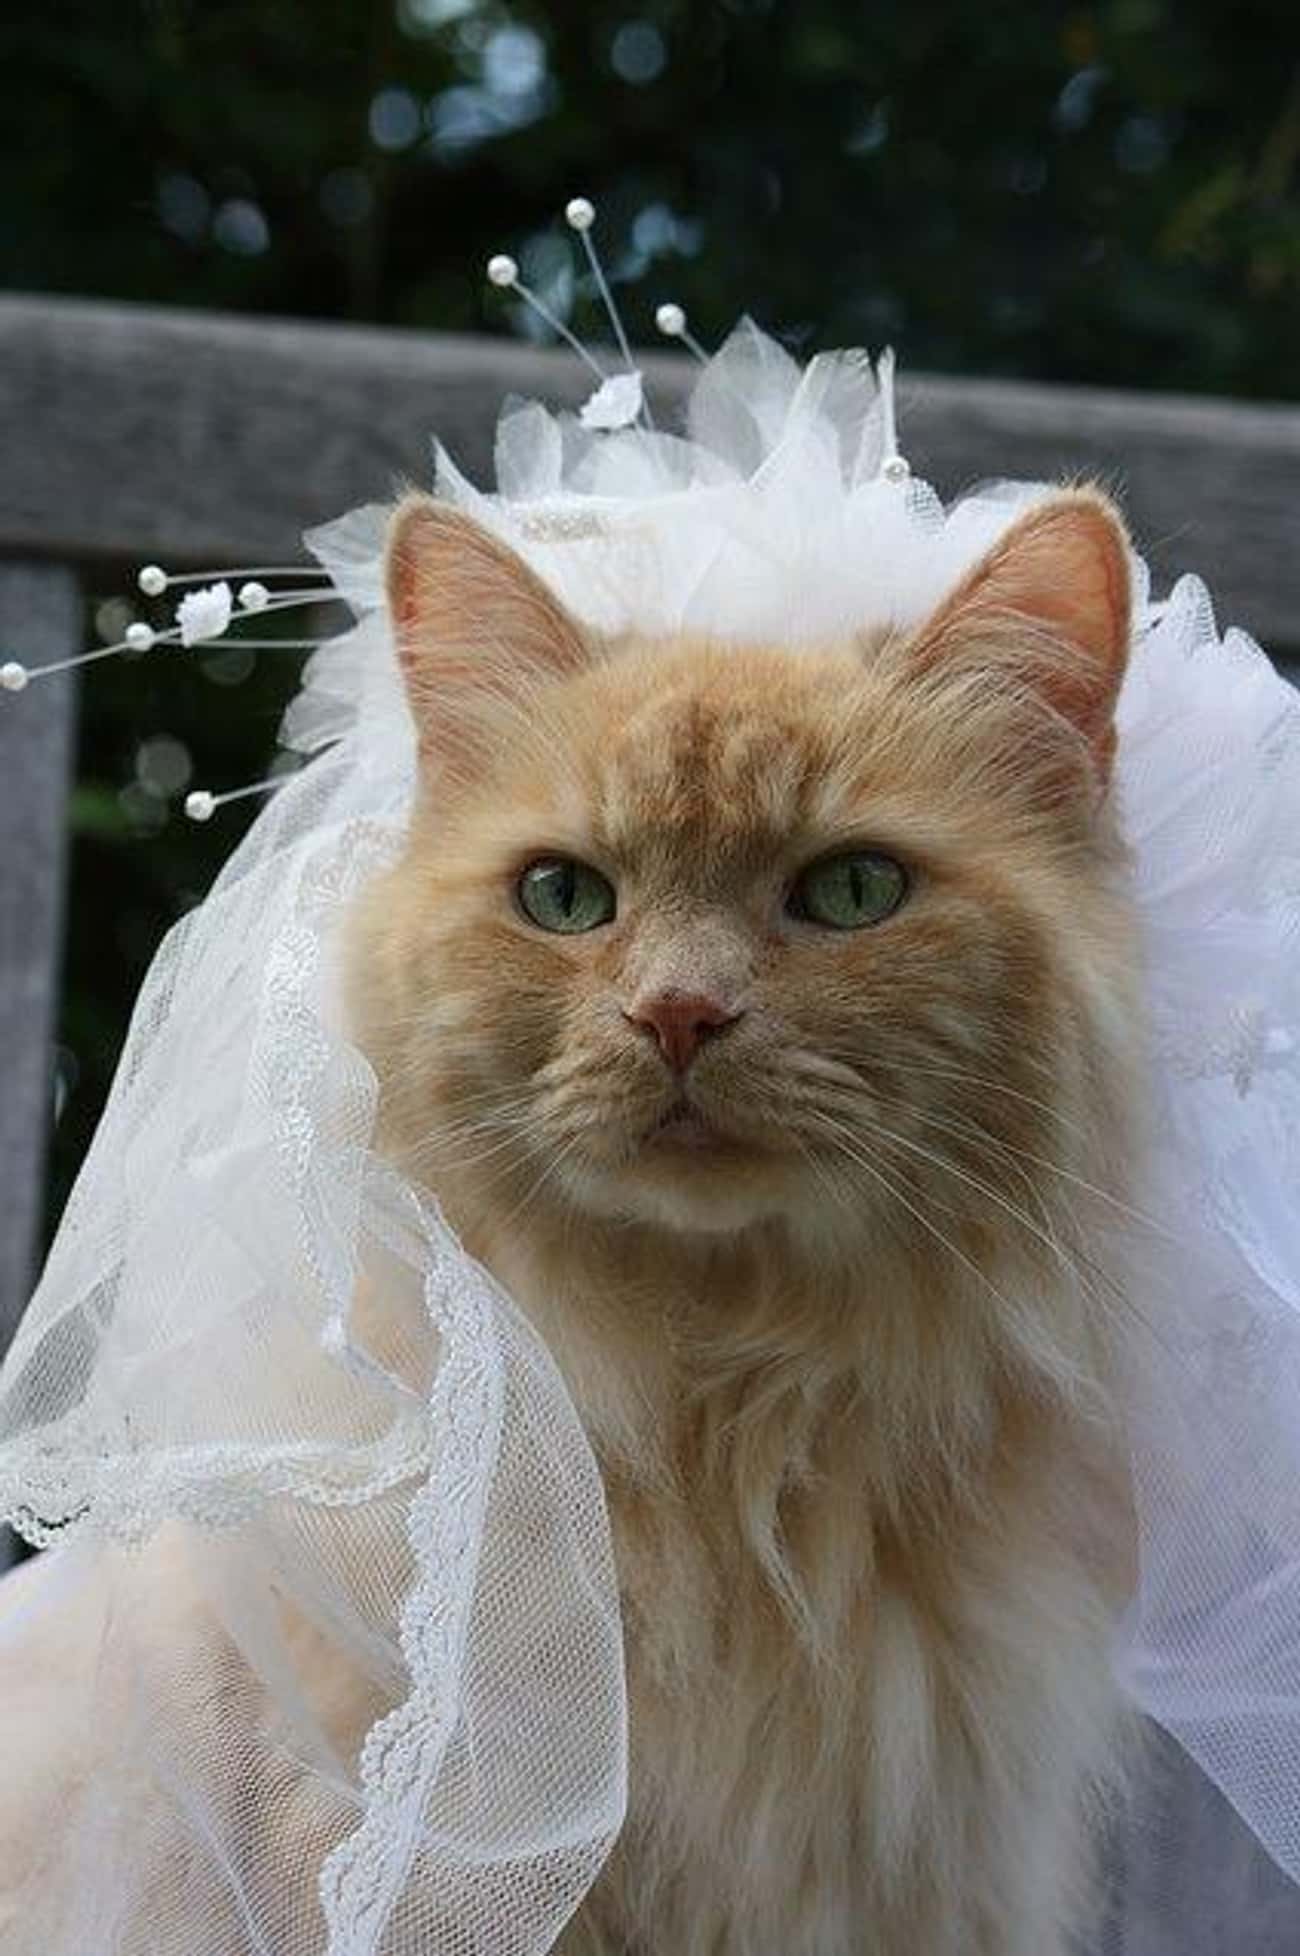 Кошки в свадебных нарядах